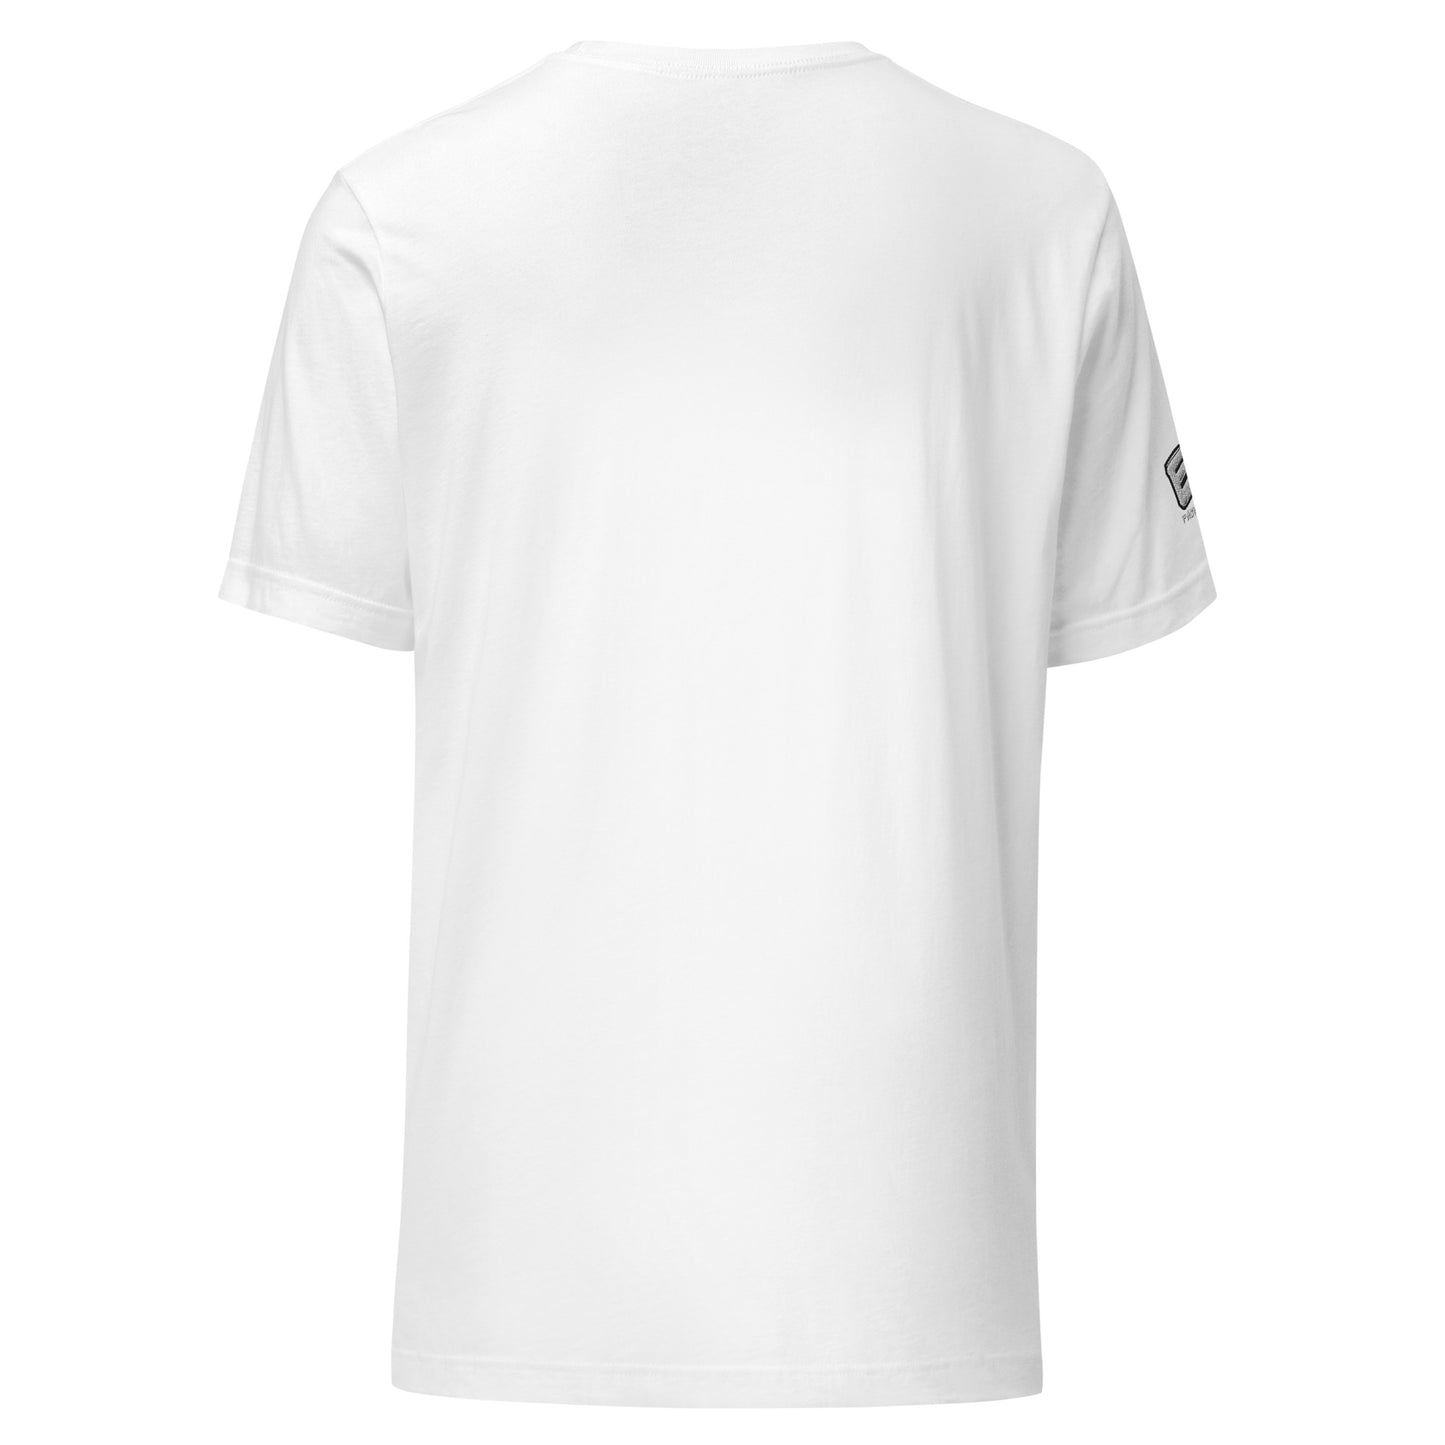 EA Fashion t-shirt